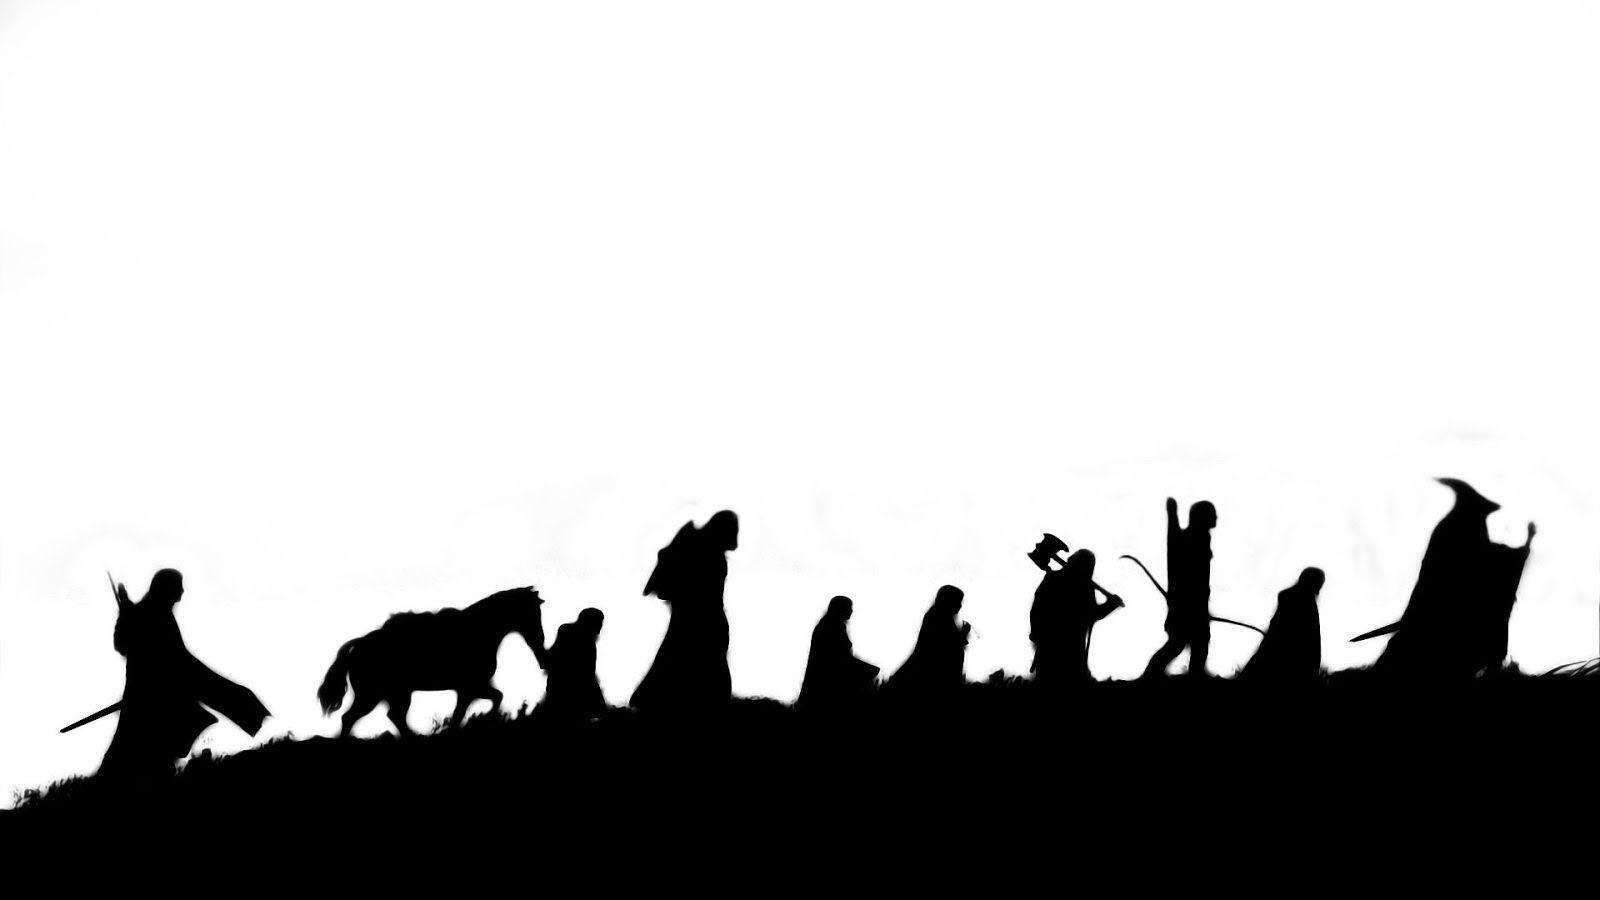 hobbit silhouette